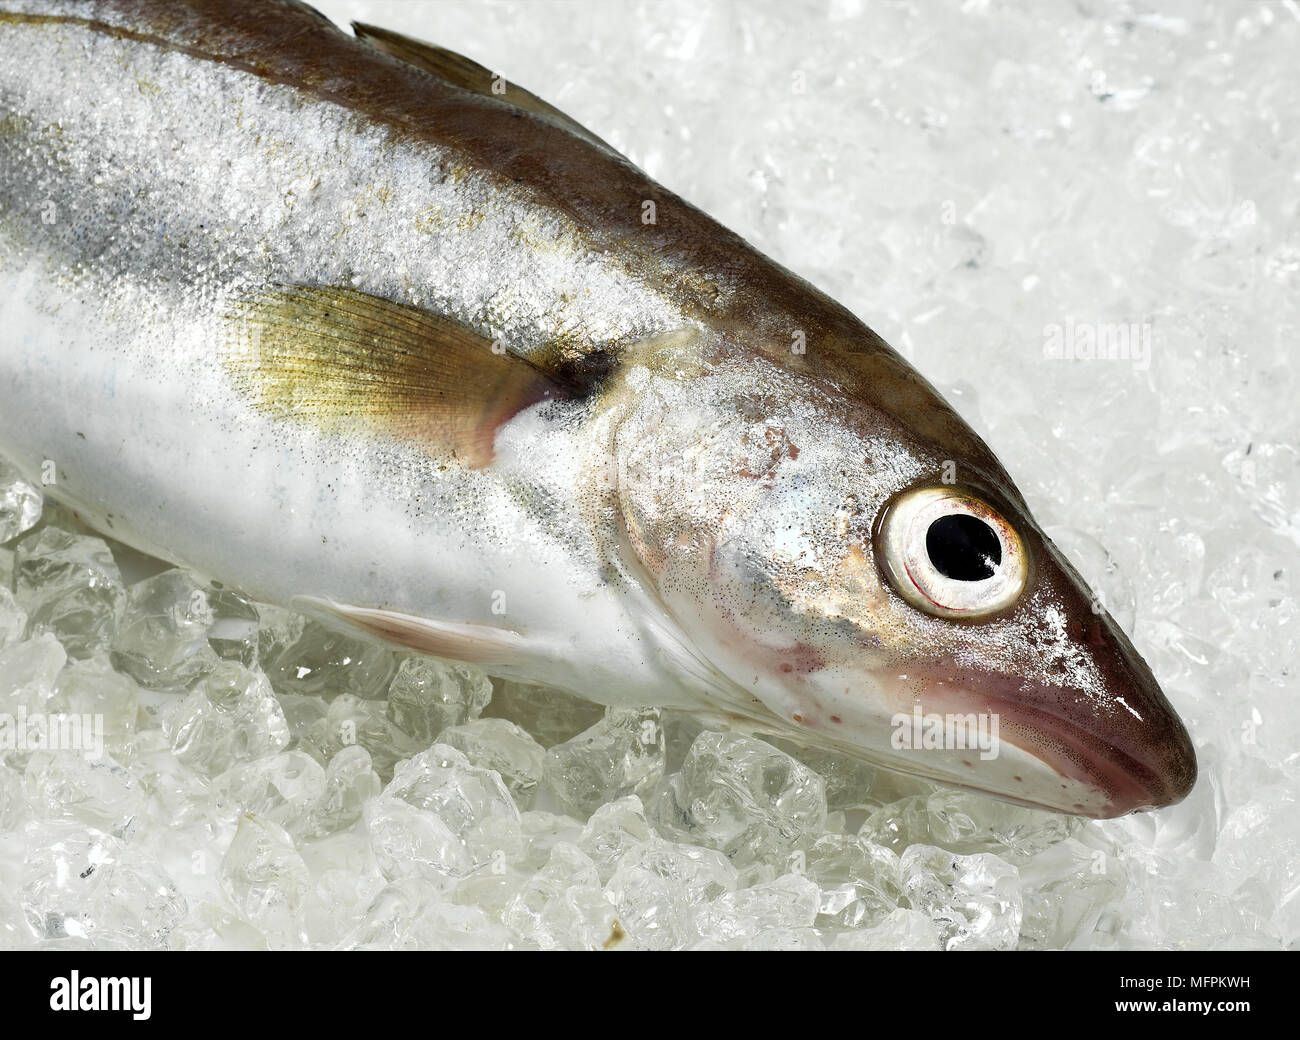 Whiting, merlangius merlangus, Fresh Fish on Ice Stock Photo